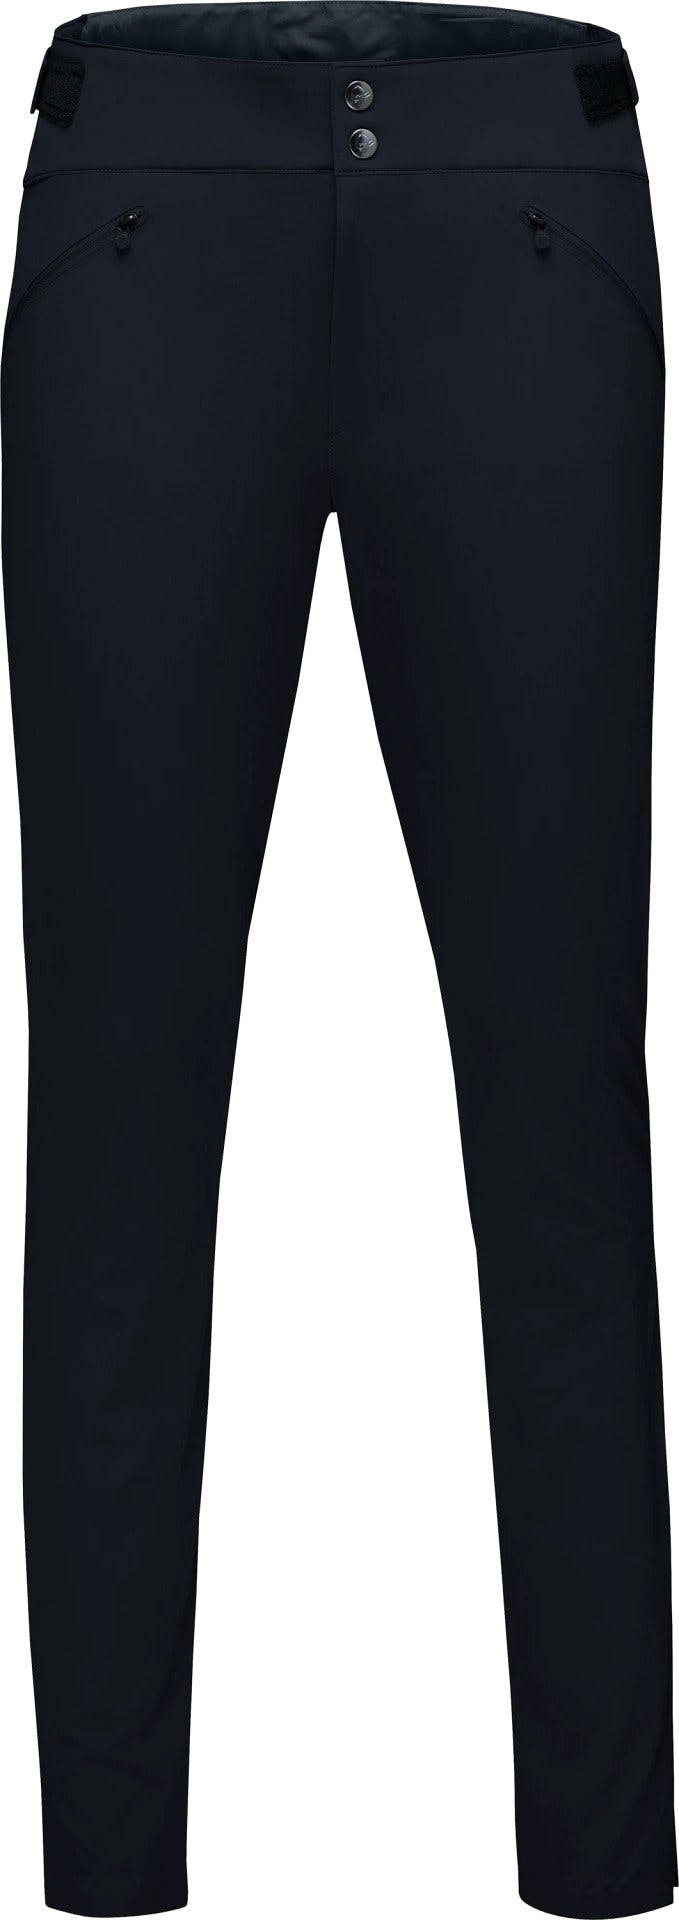 Product image for Falketind Flex1 Slim Pants - Women's